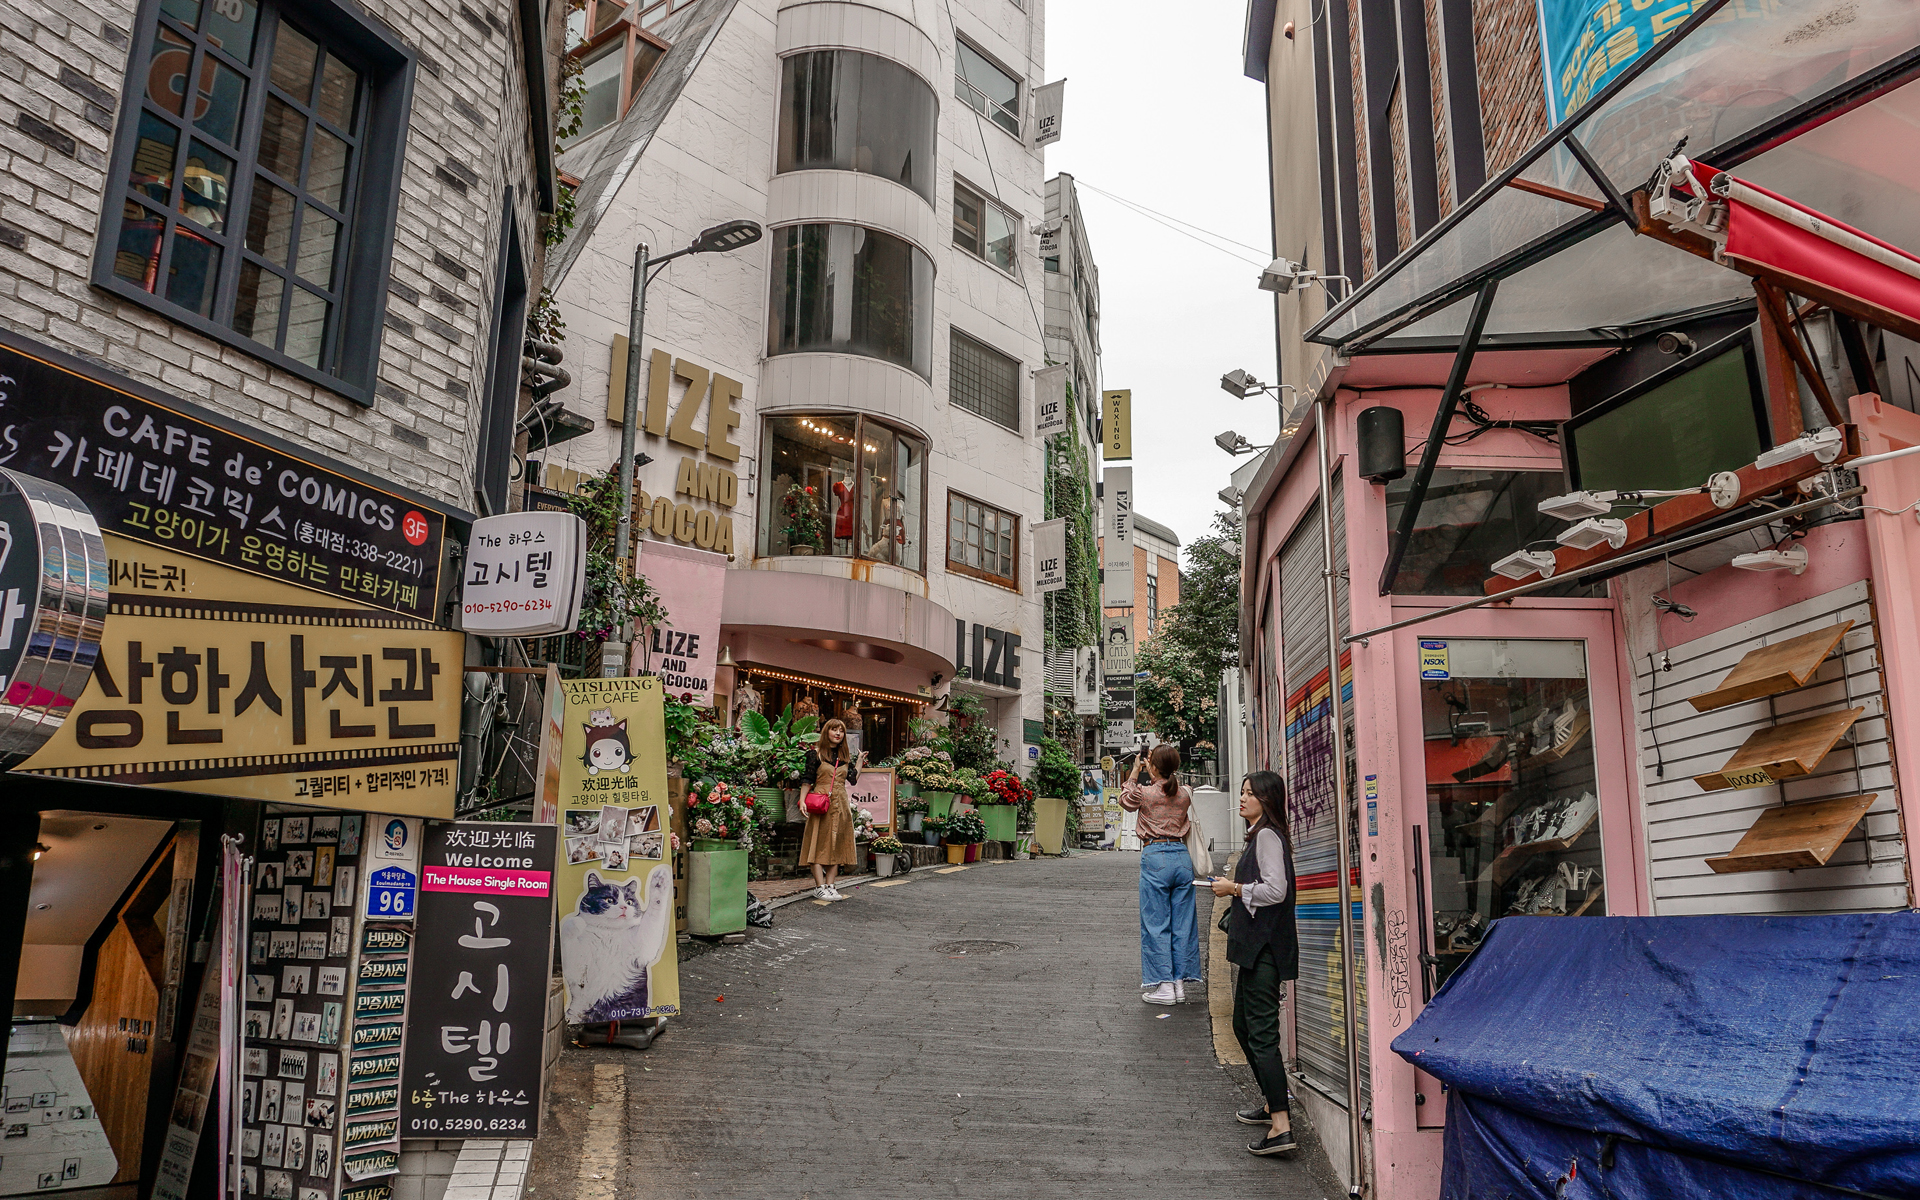 Sehenswüdigkeiten: Eine hippe Gasse in der Innenstadt von Seoul, eine Frau lässt sich fotografieren.